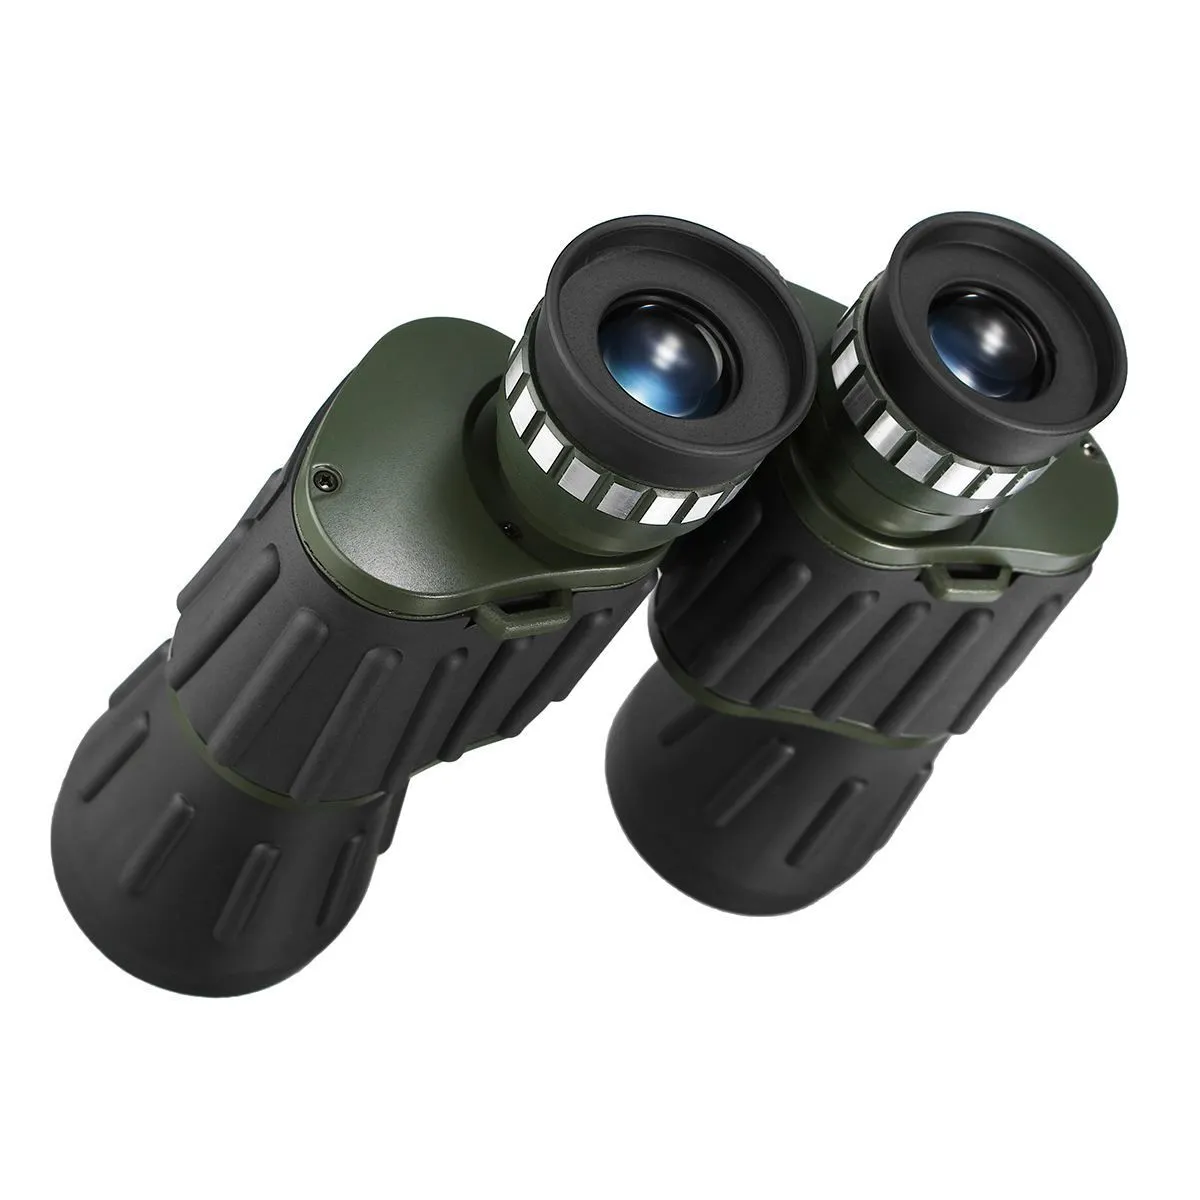 ナイトビジョンの戦術的双眼鏡ハイクラリティテレススコープストレージバッグで狩りをするための高出力双眼鏡LJ2011206144743